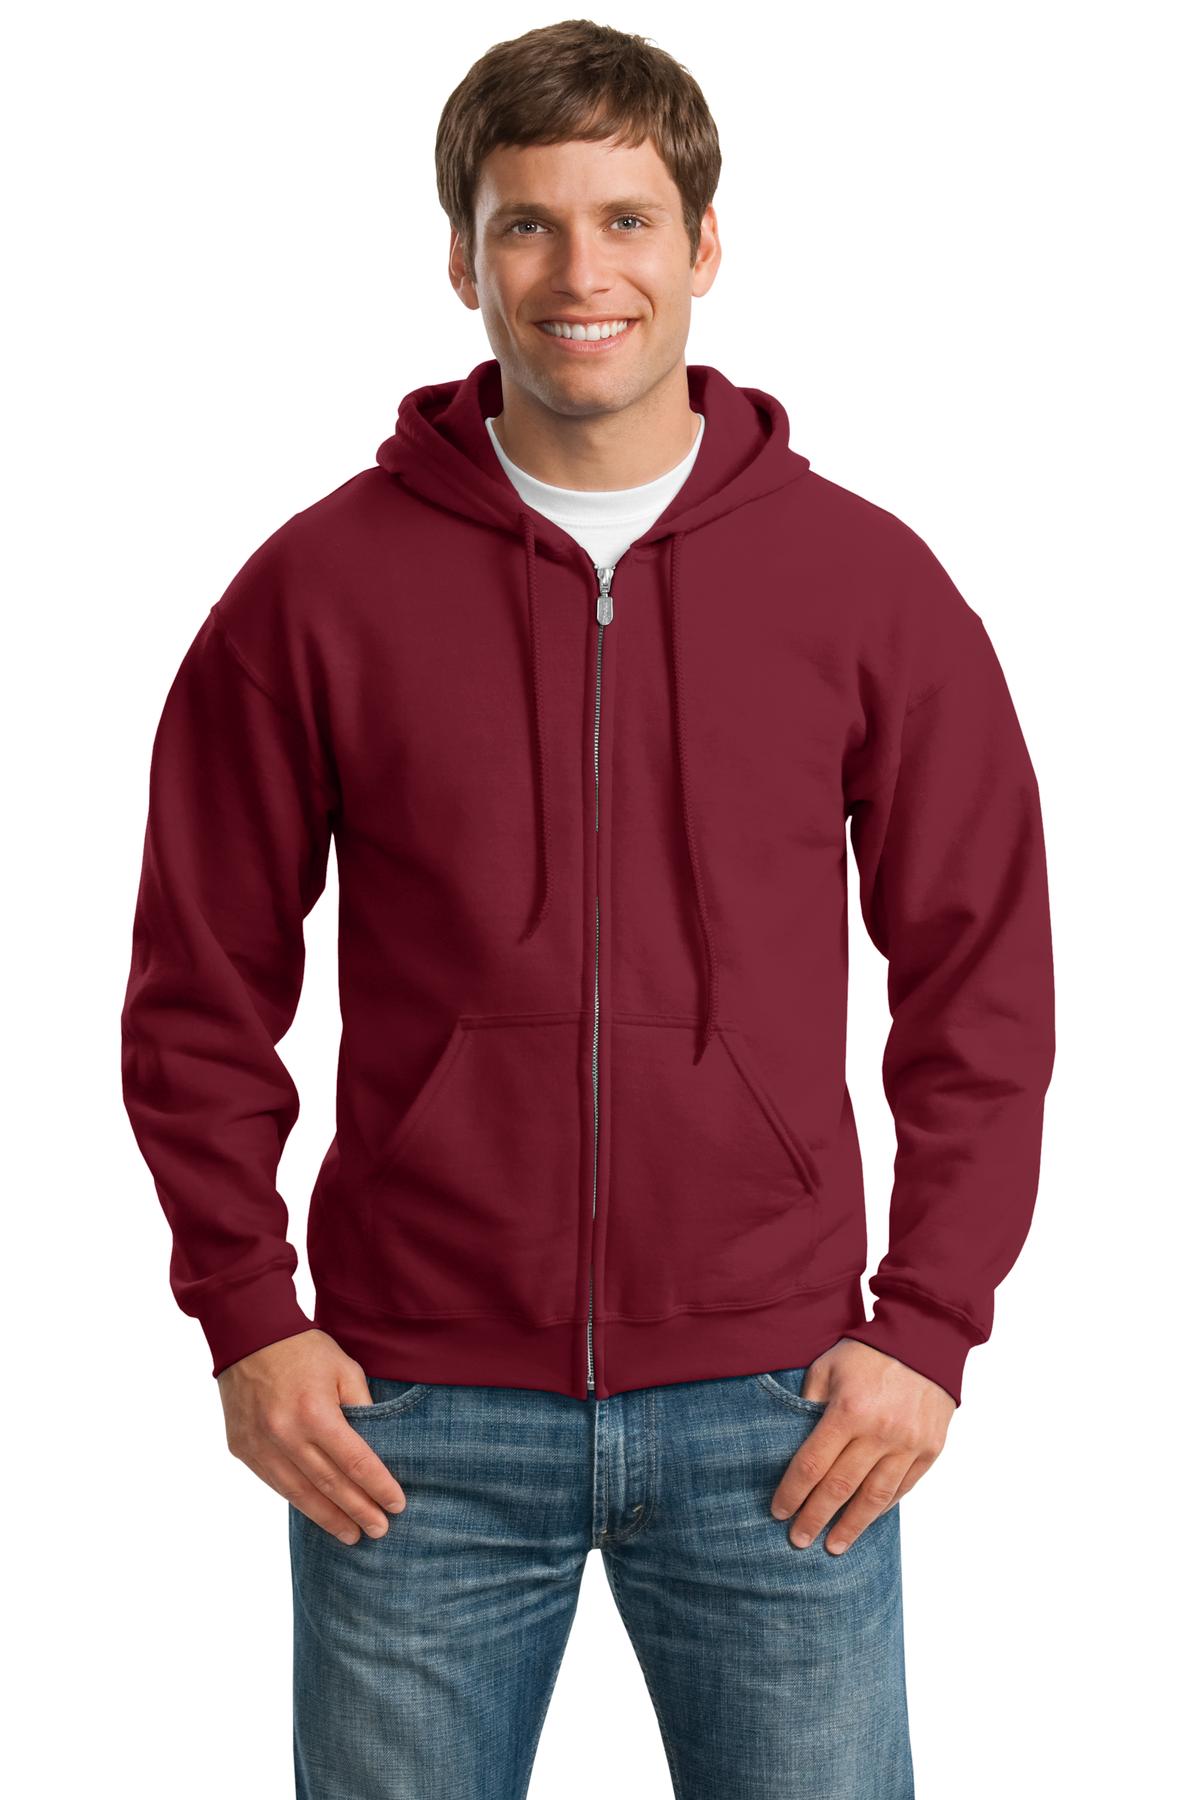 Sweatshirts/Fleece Cardinal Gildan